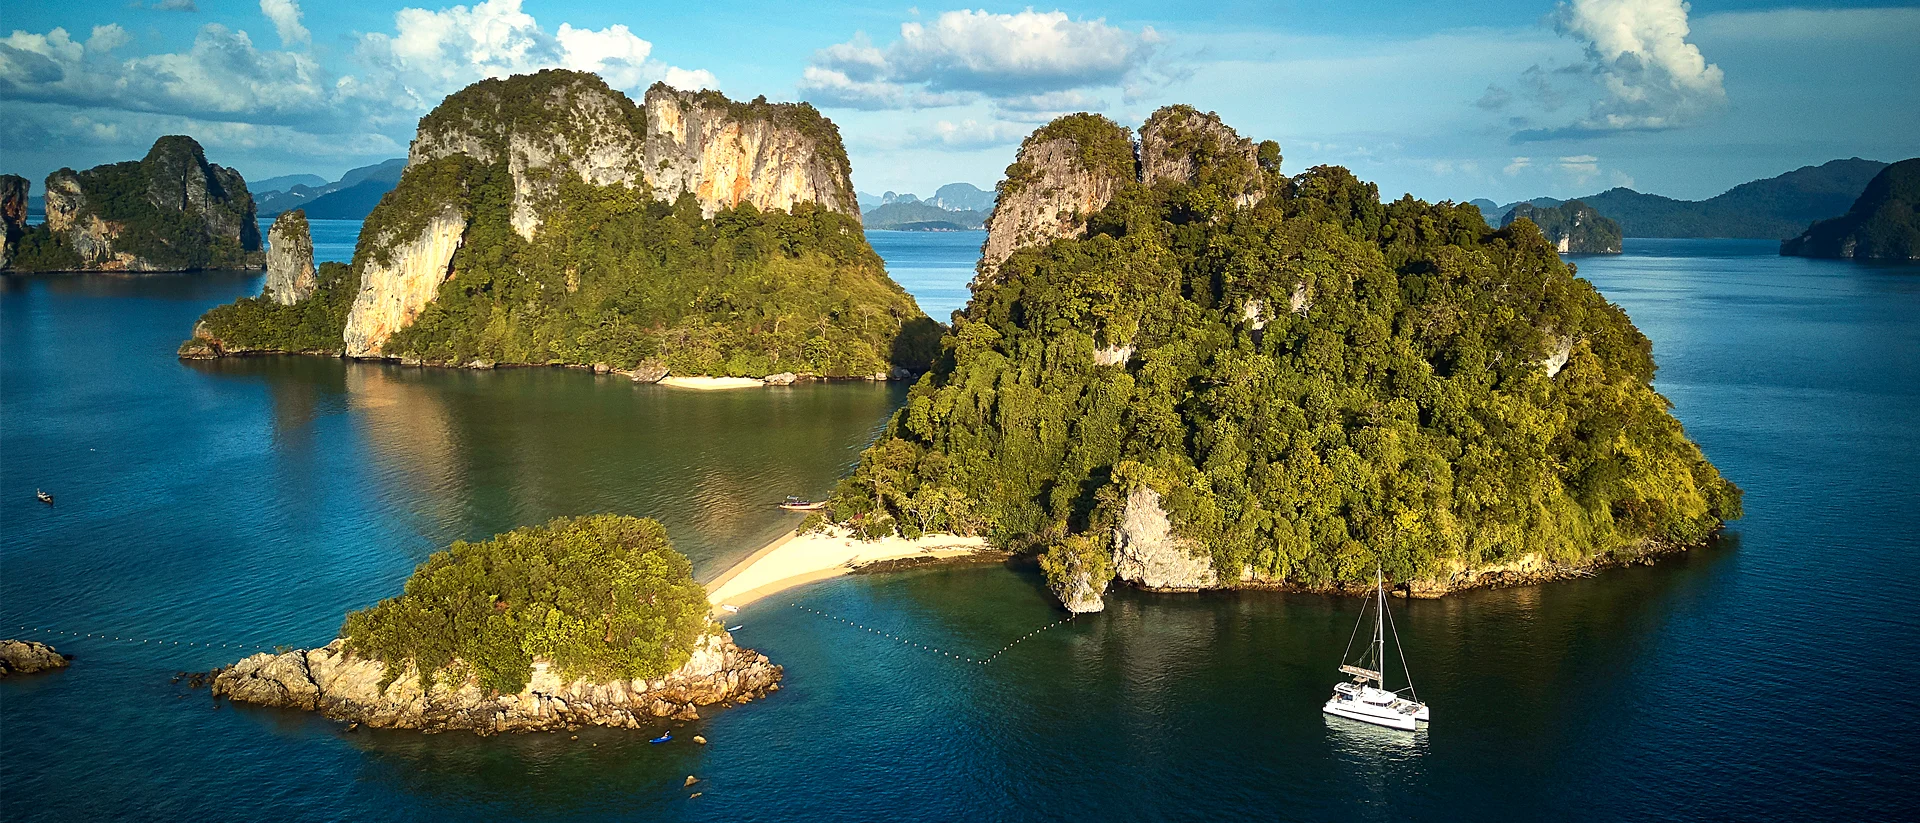 Isola e rocce imponenti in Thailandia durante la navigazione in barca a vela